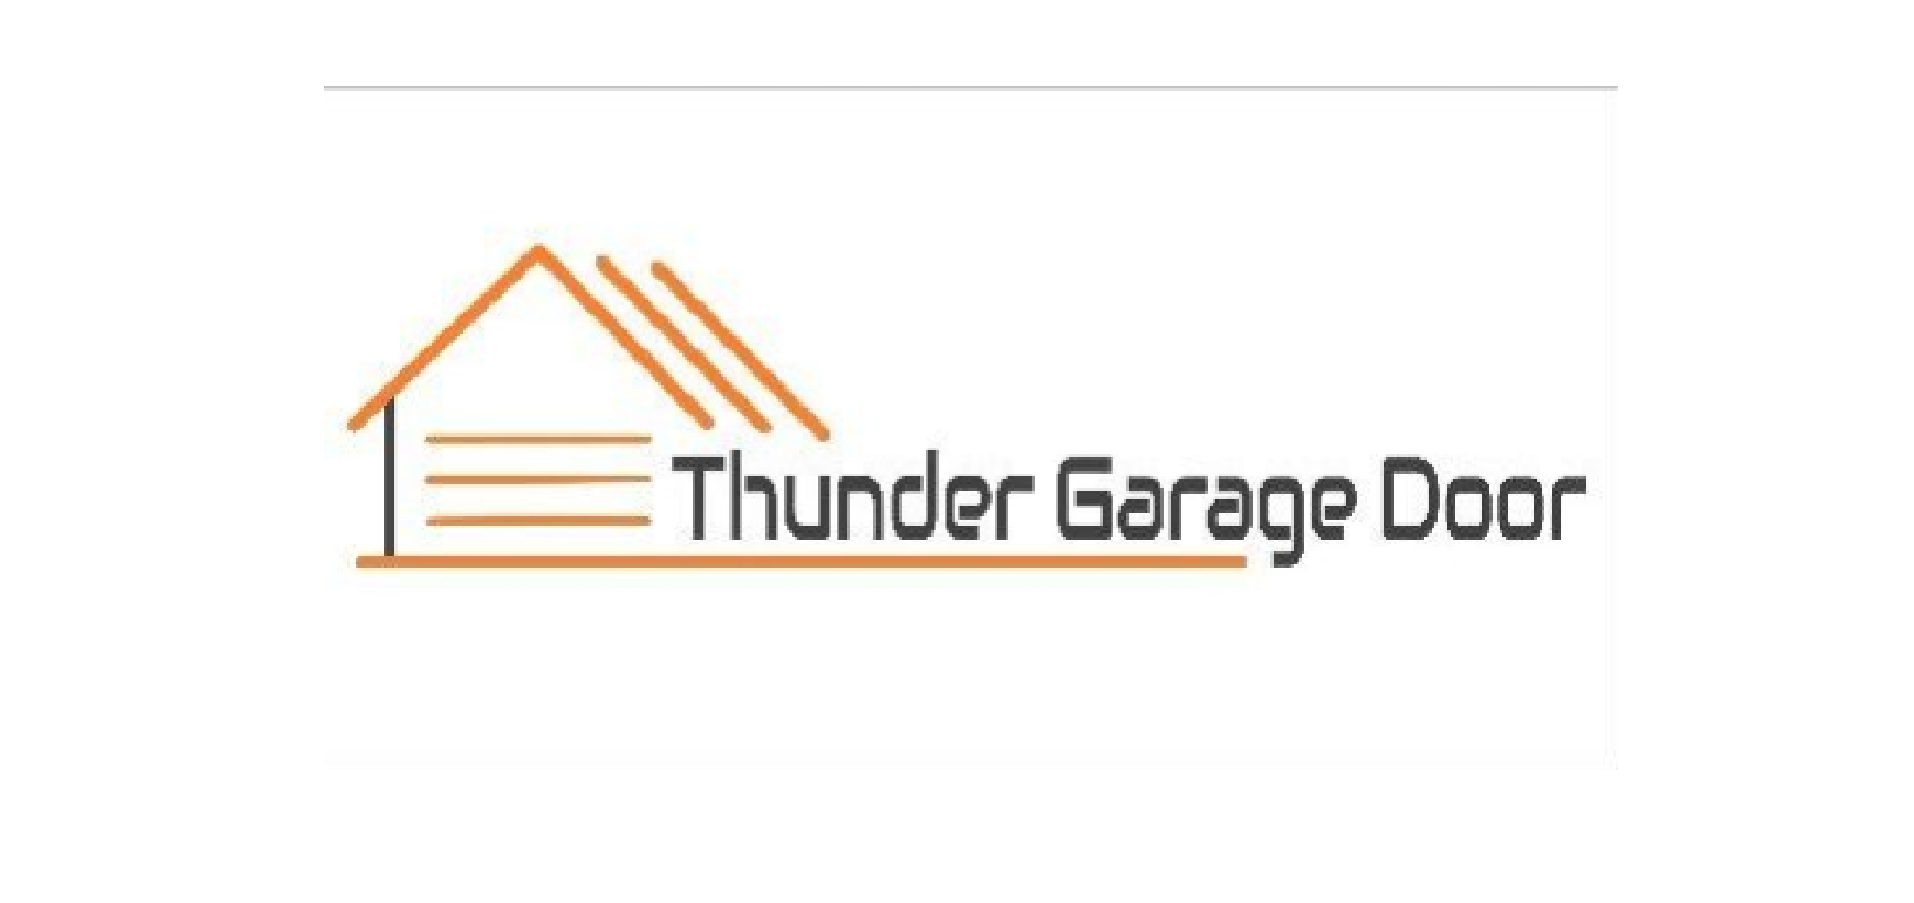 Thunder Garage Door